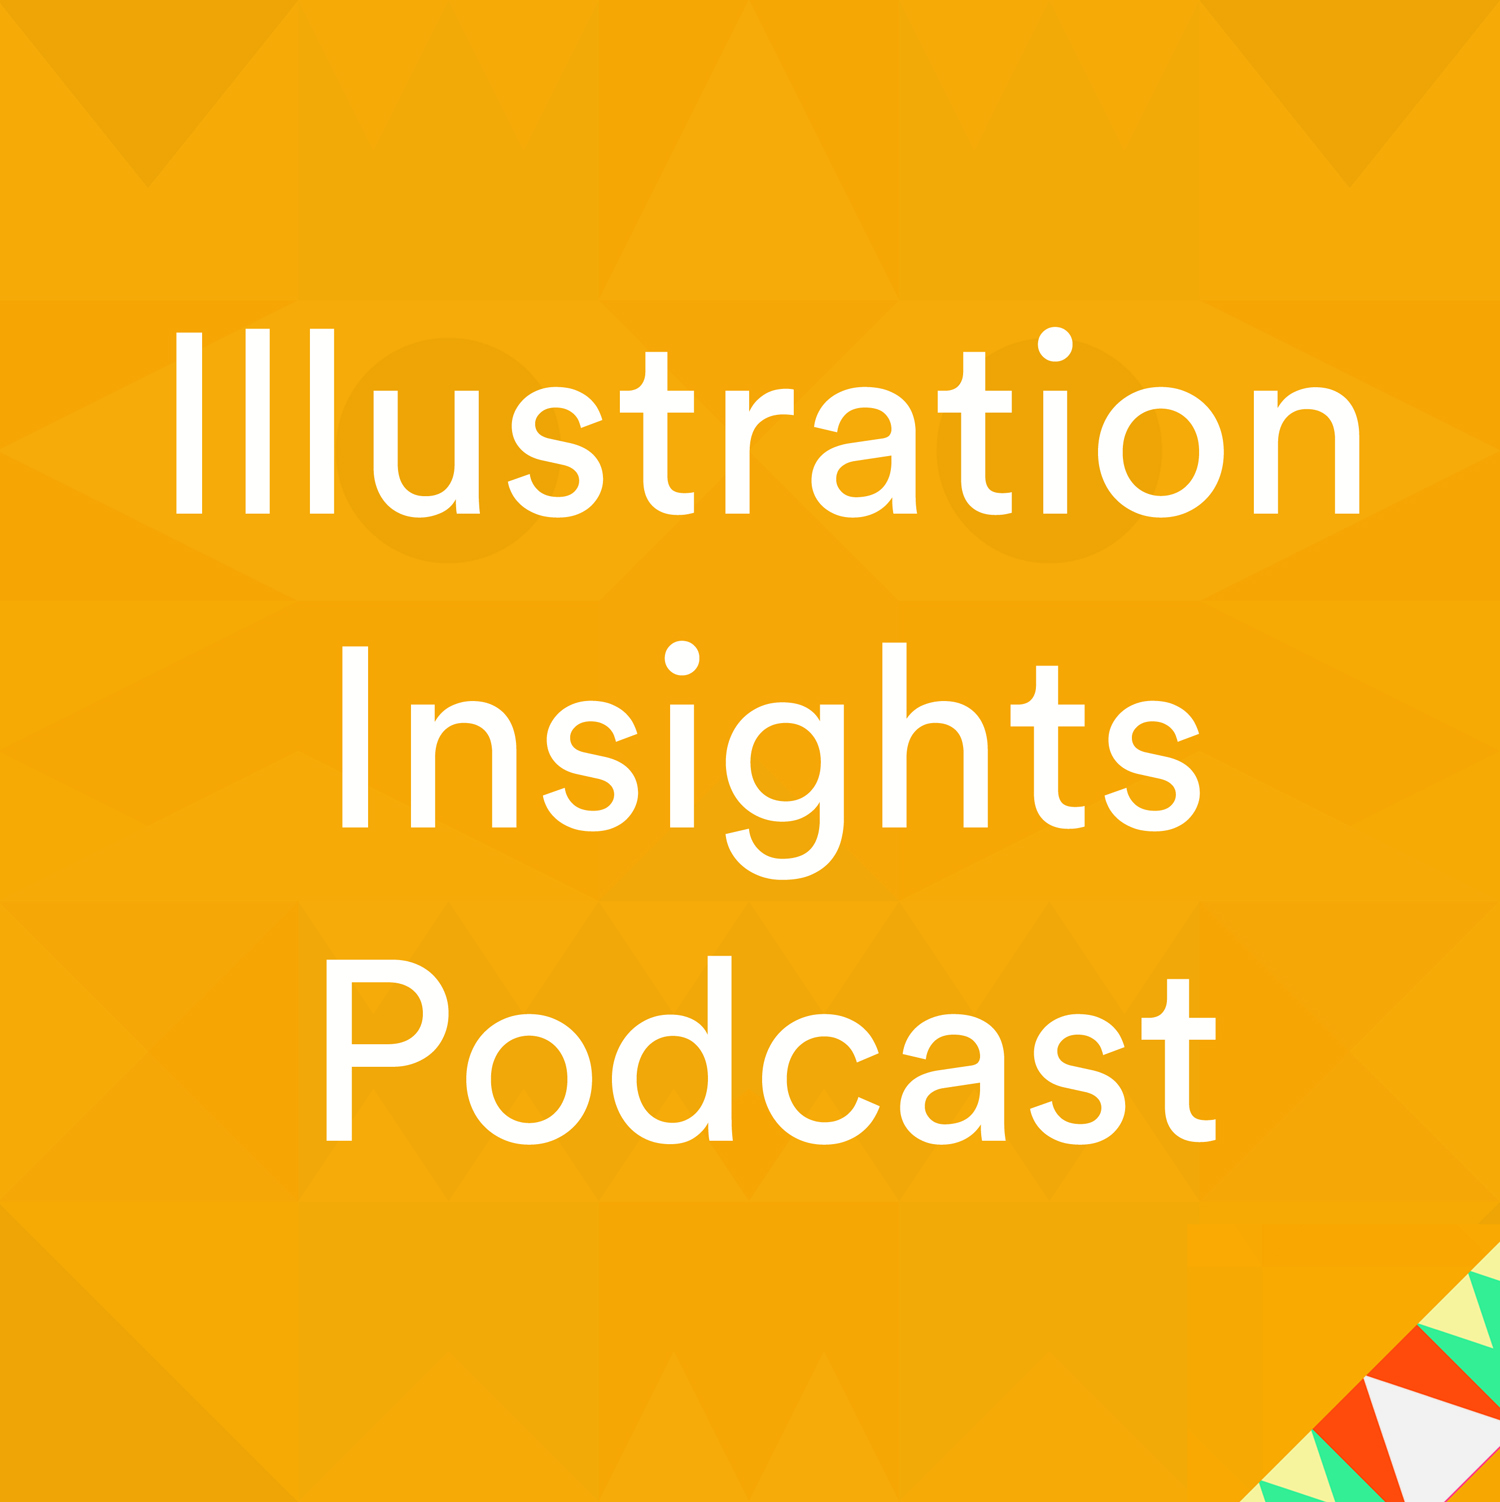 Illustration Insights Podcast (Tash Willcocks)